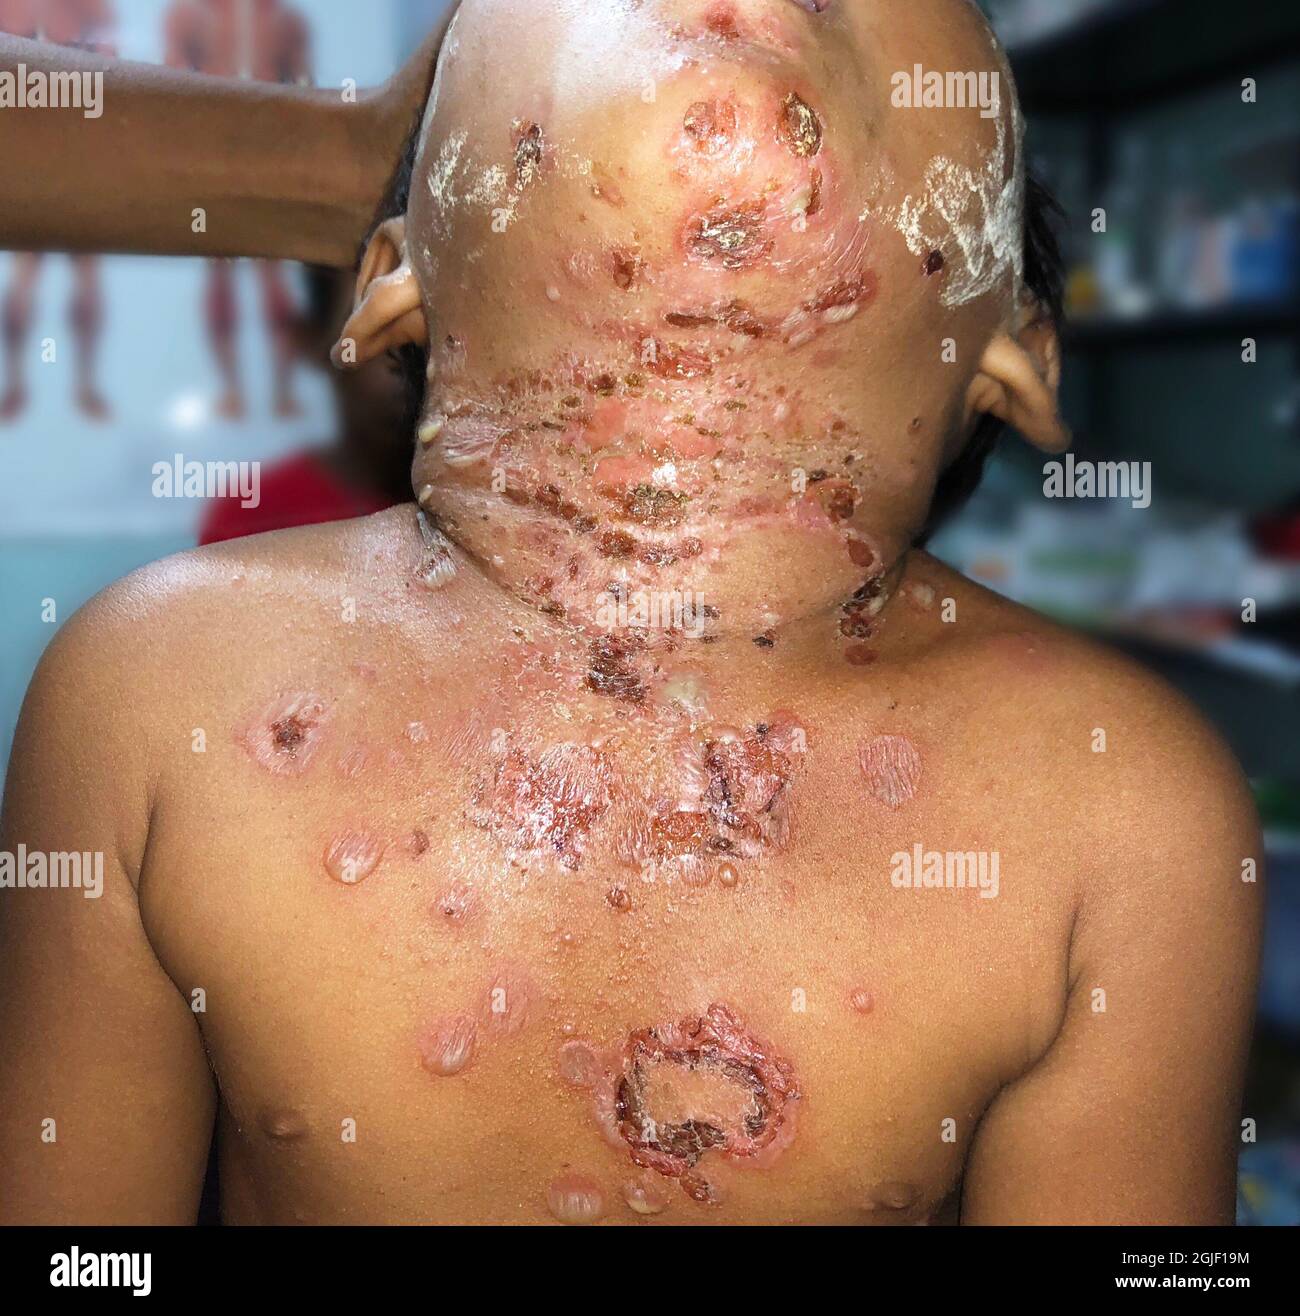 Múltiples impétigo o numerosas infecciones estafilocócicas o estreptocócicas de la piel en el pecho y el cuello del niño birmano del sudeste asiático en la clínica de Myanmar Foto de stock